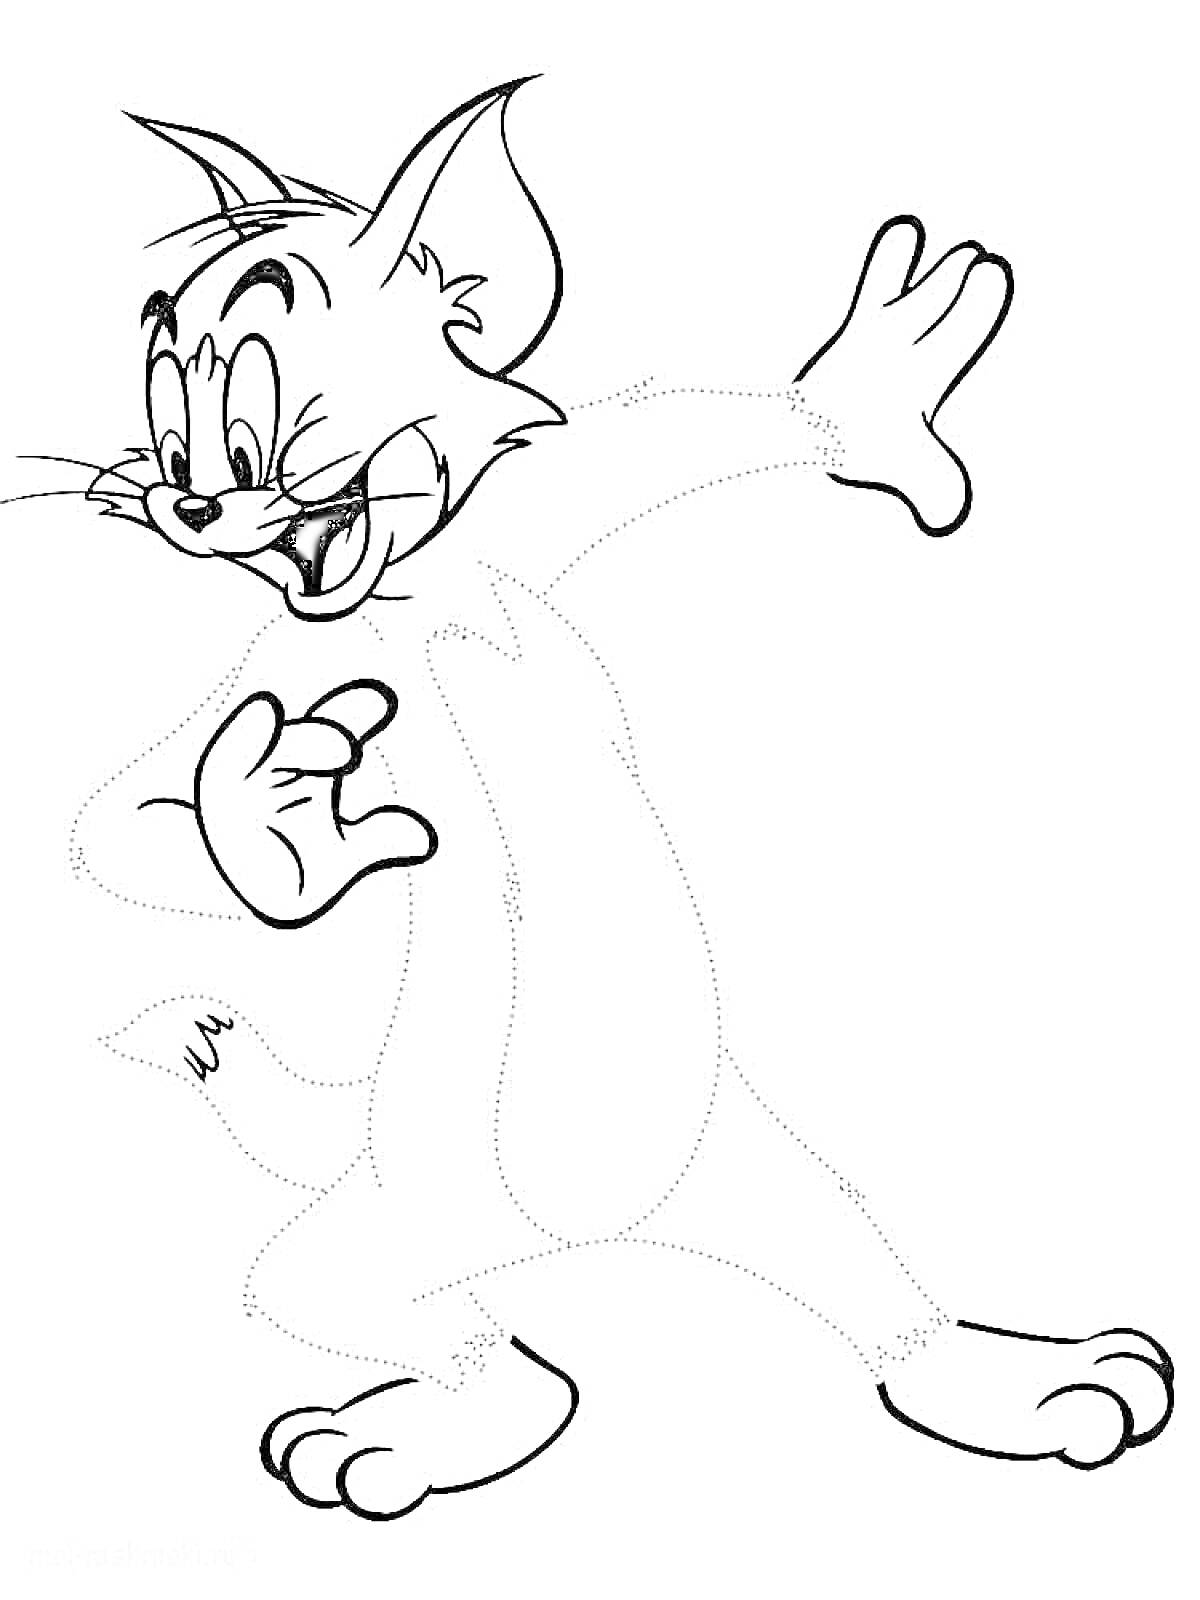 Раскраска Кот с поднятой рукой, который нарисован по точкам